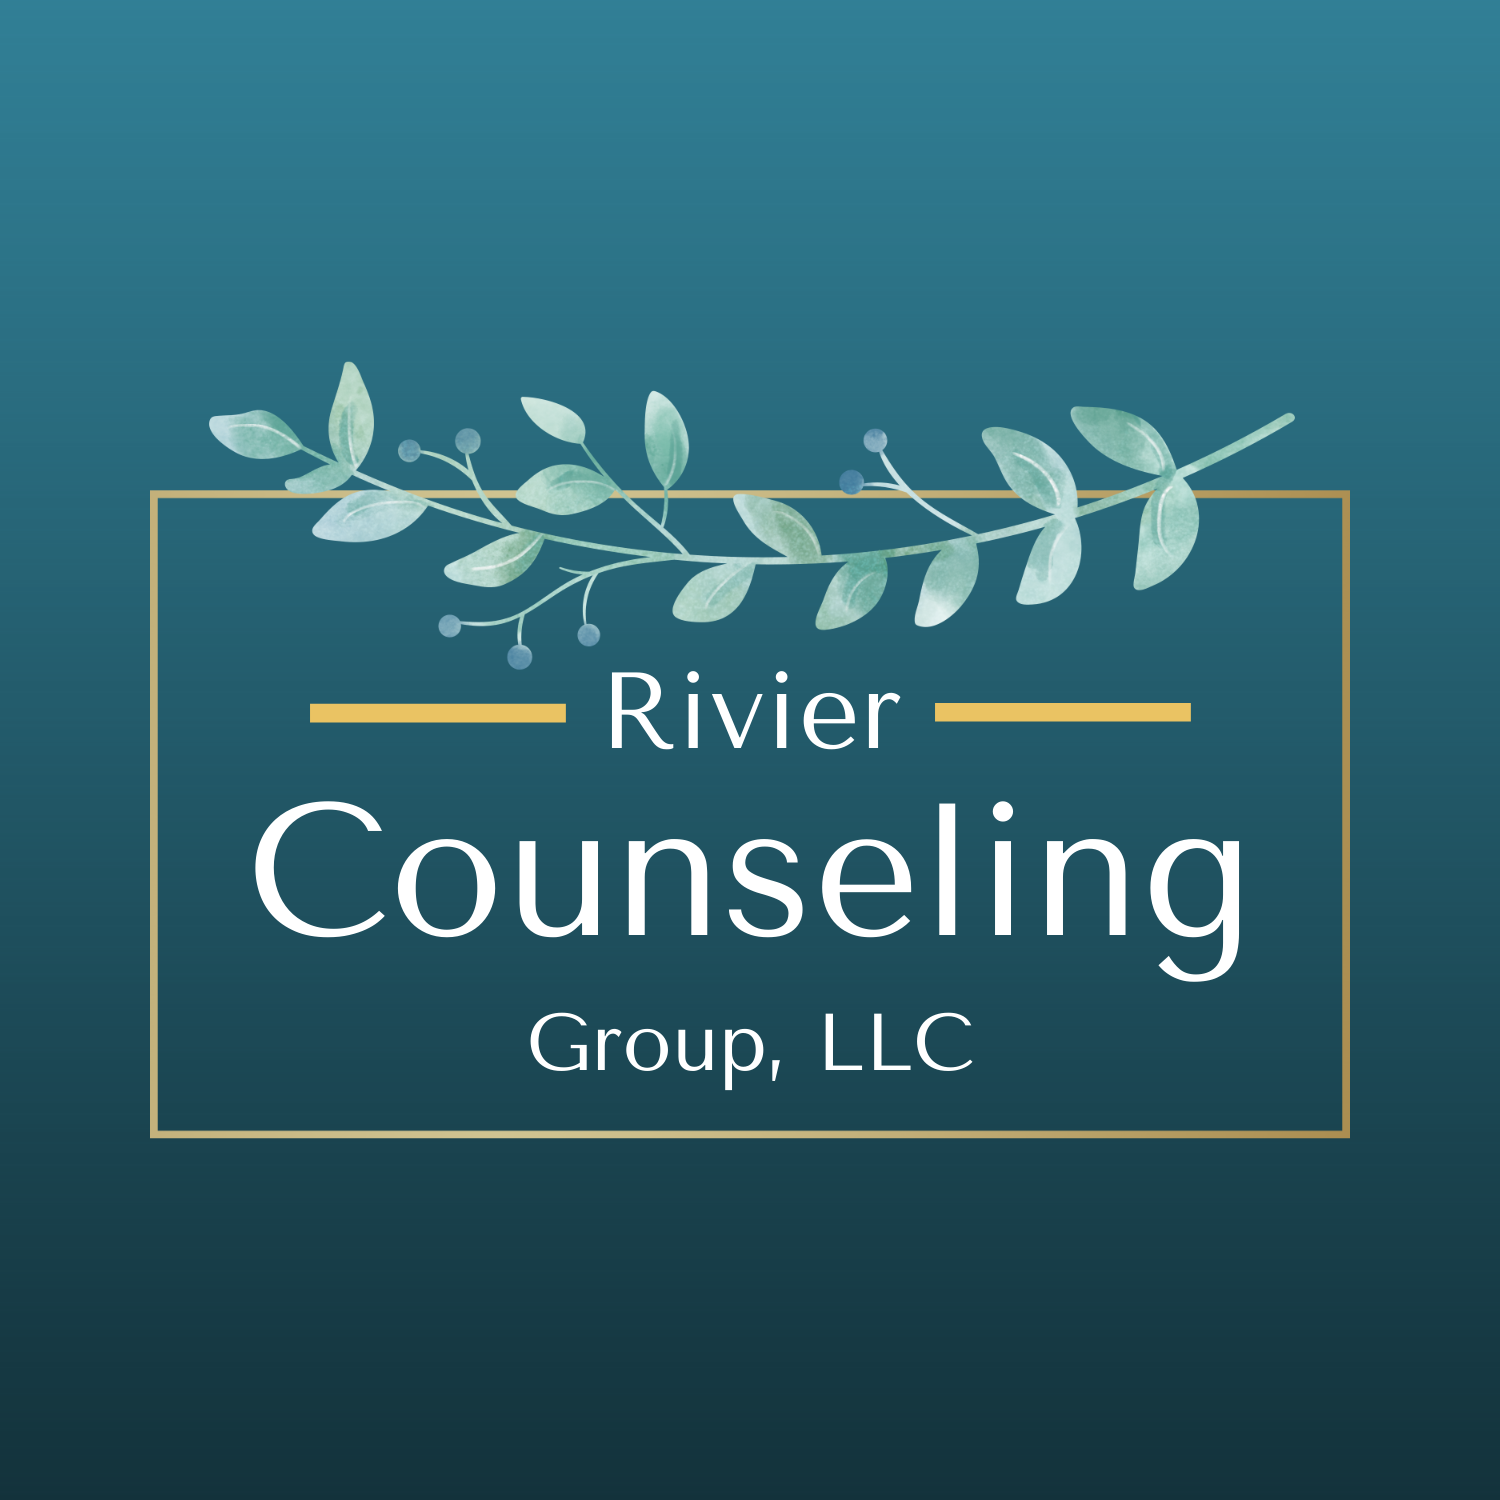 Rivier Counseling Group 649 W Mondamin St, Minooka Illinois 60447